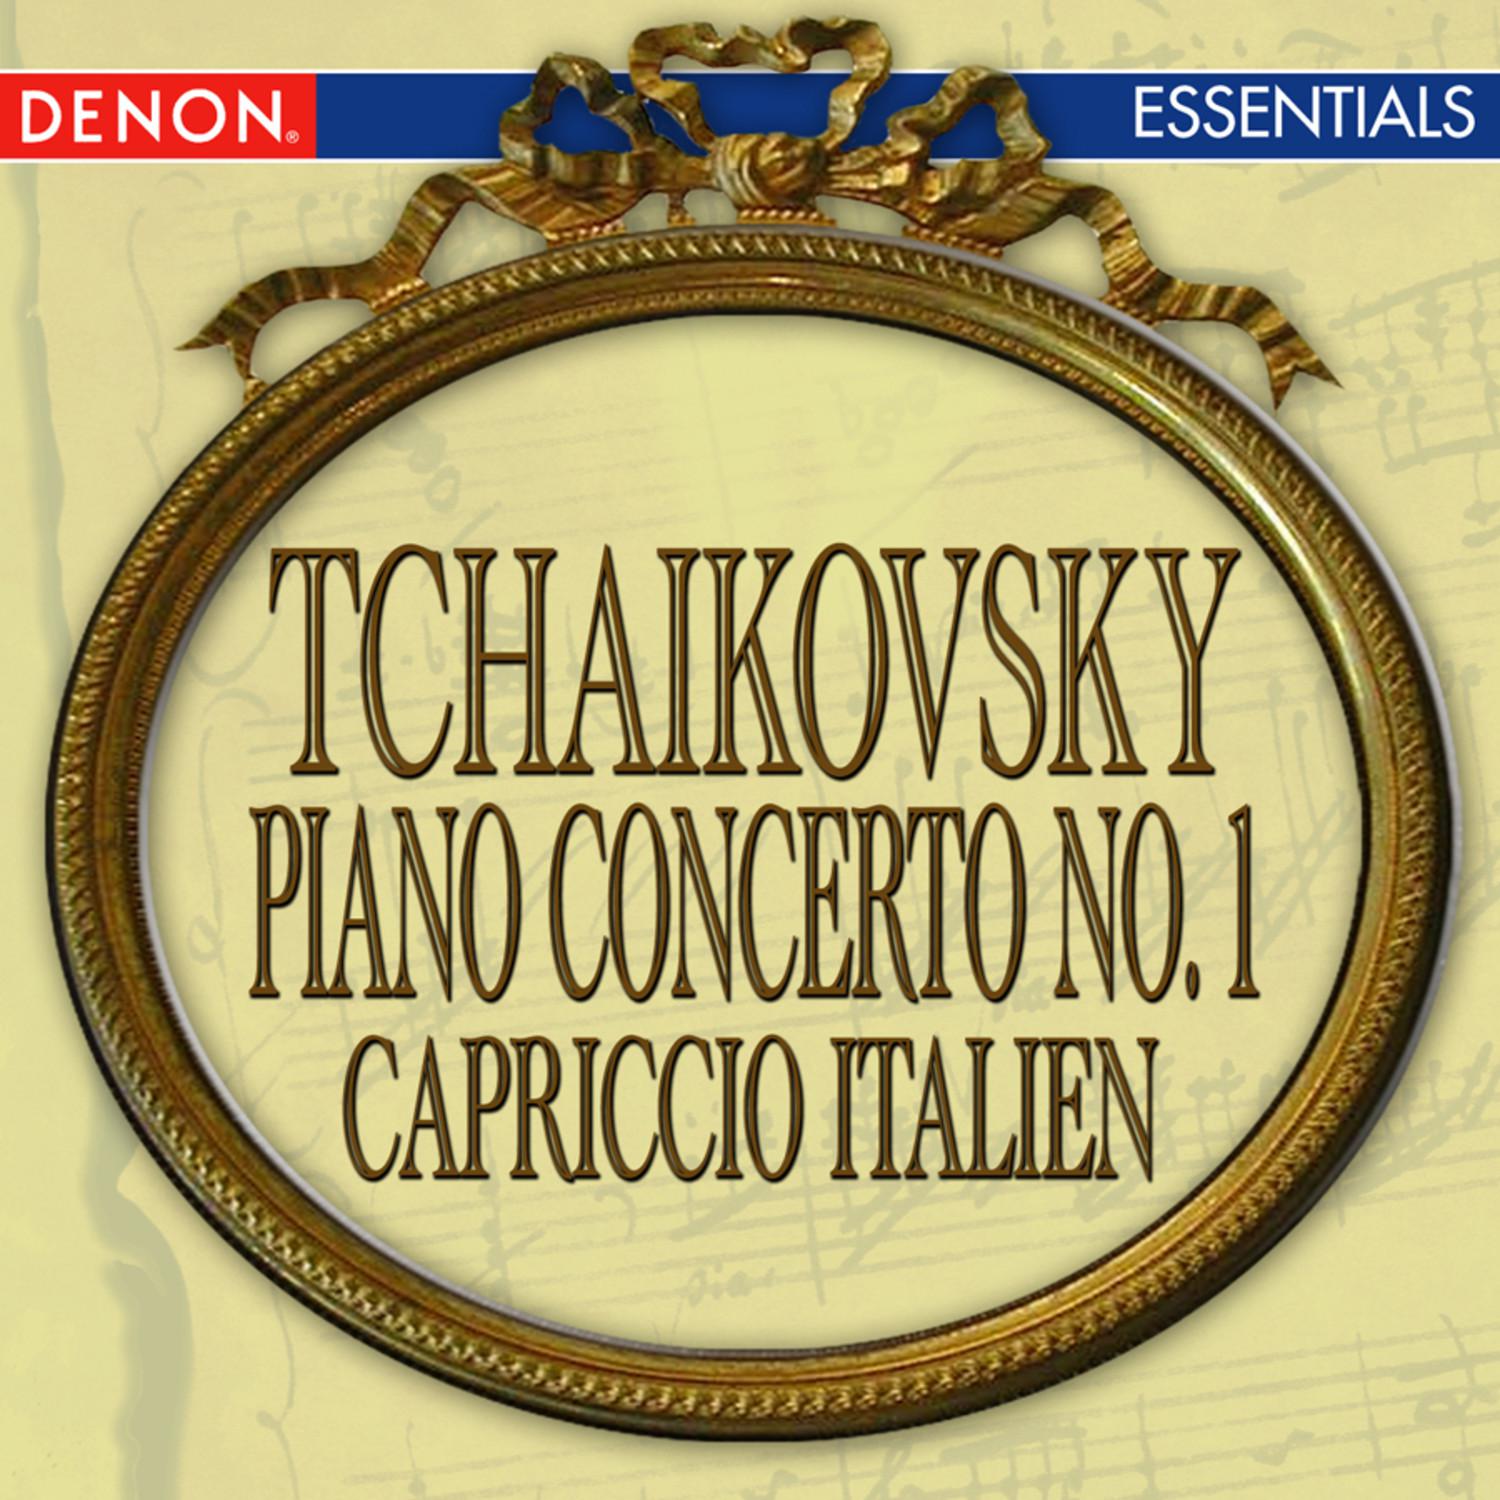 Concerto for Piano and Orchestra No. 1 in B-Flat Minor, Op. 23: I. Allegro non troppo e molto maestoso – Allegro con spirito